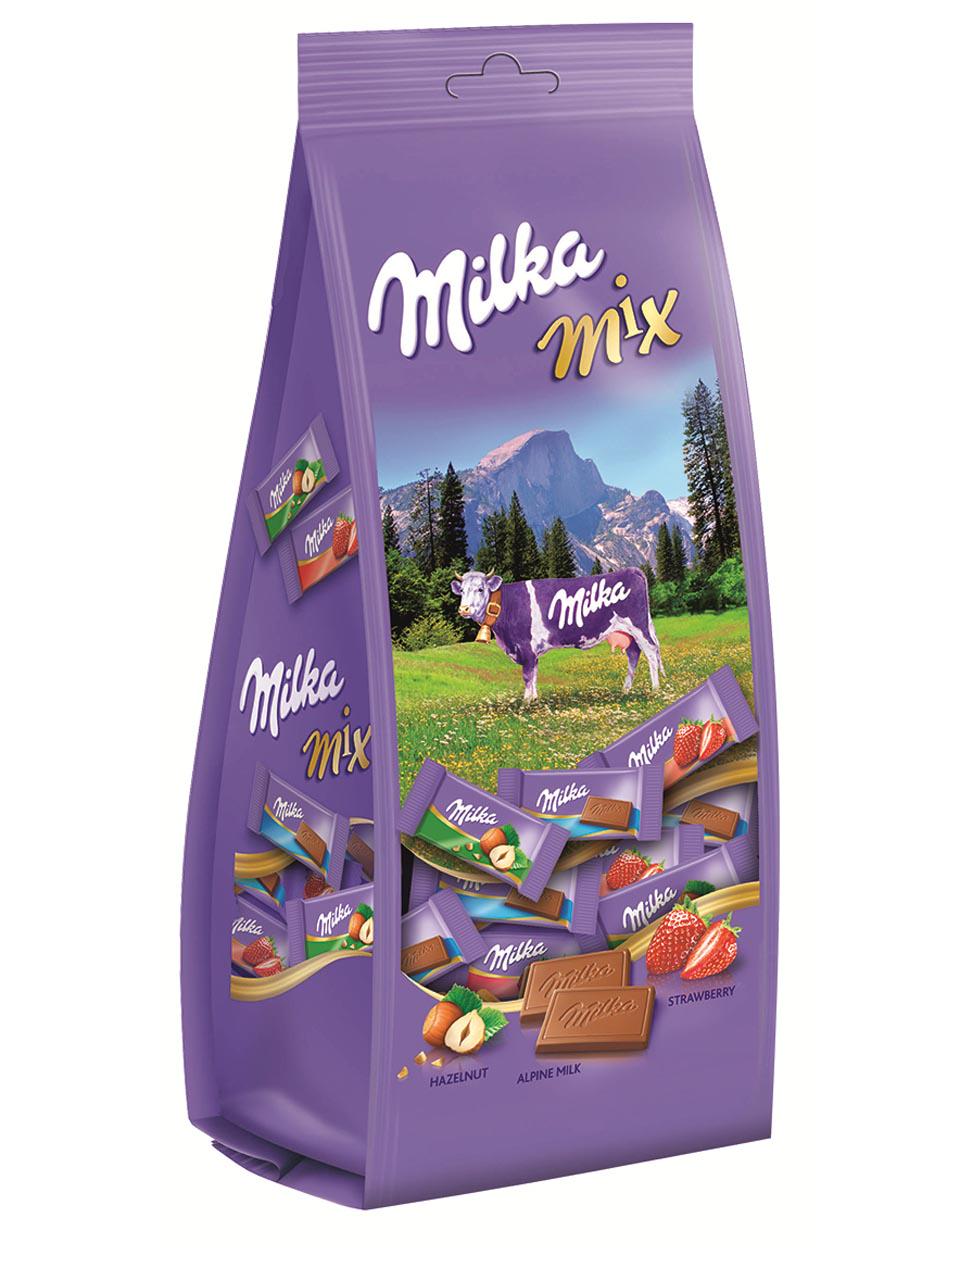 Продукты милки. Милка. Шоколад Милка. Milka упаковка. Шоколадка в упаковке Милка.